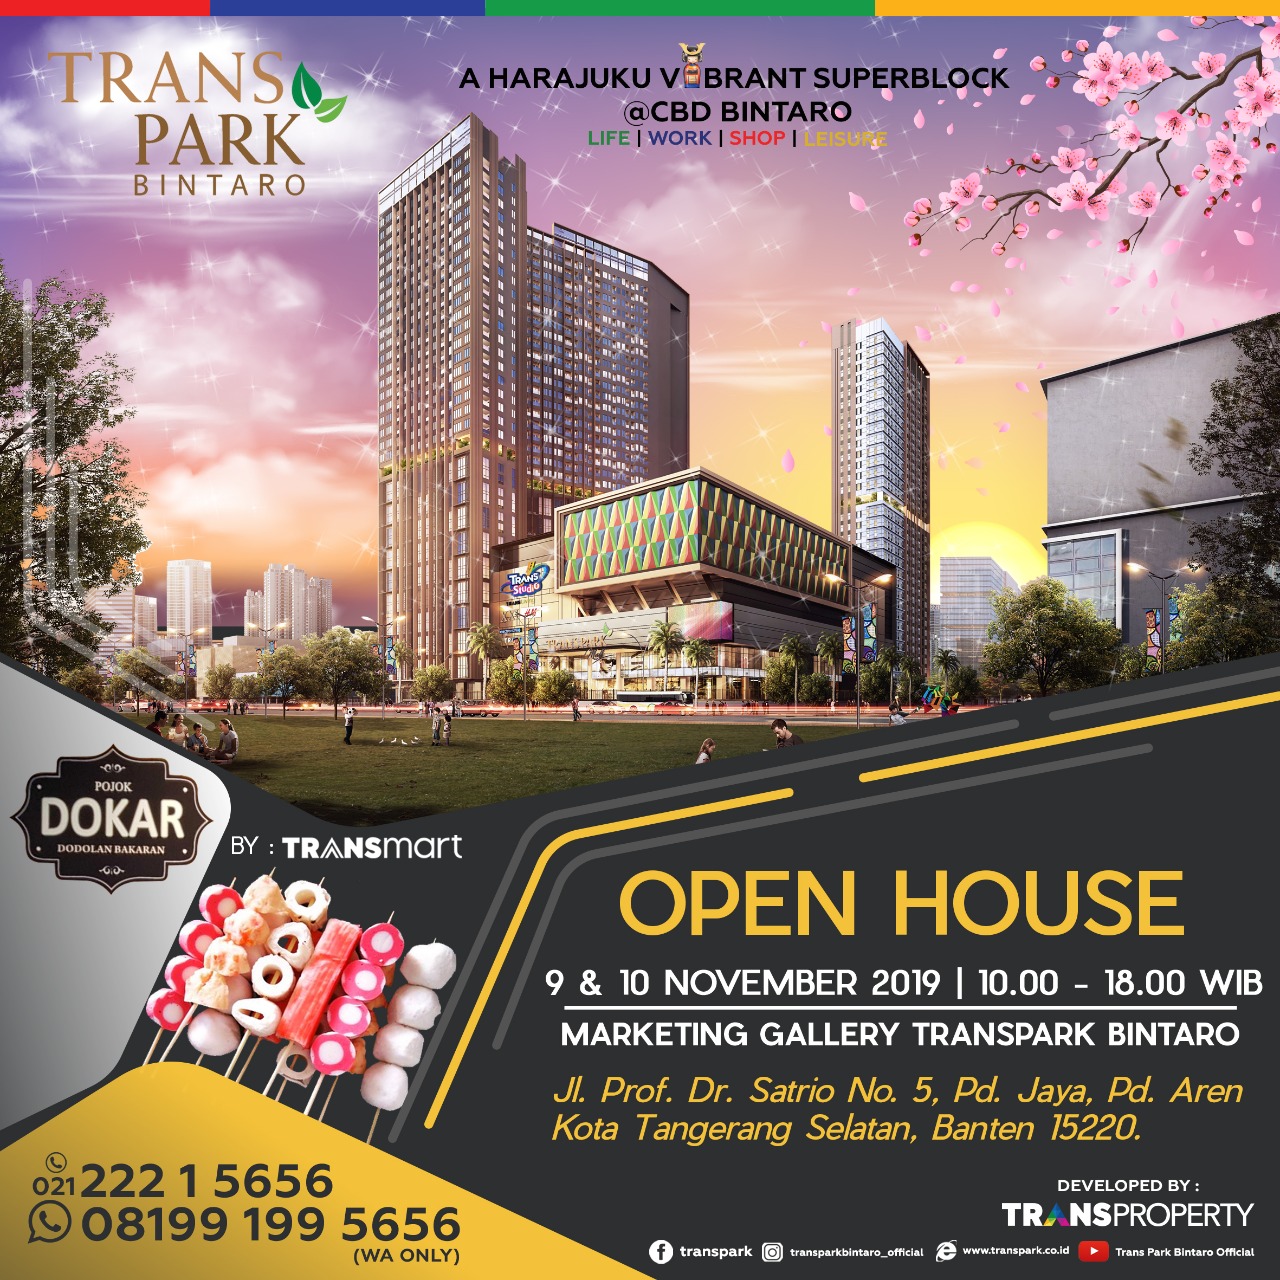 Open House Transpark Bintaro 9 & 10 November 2019